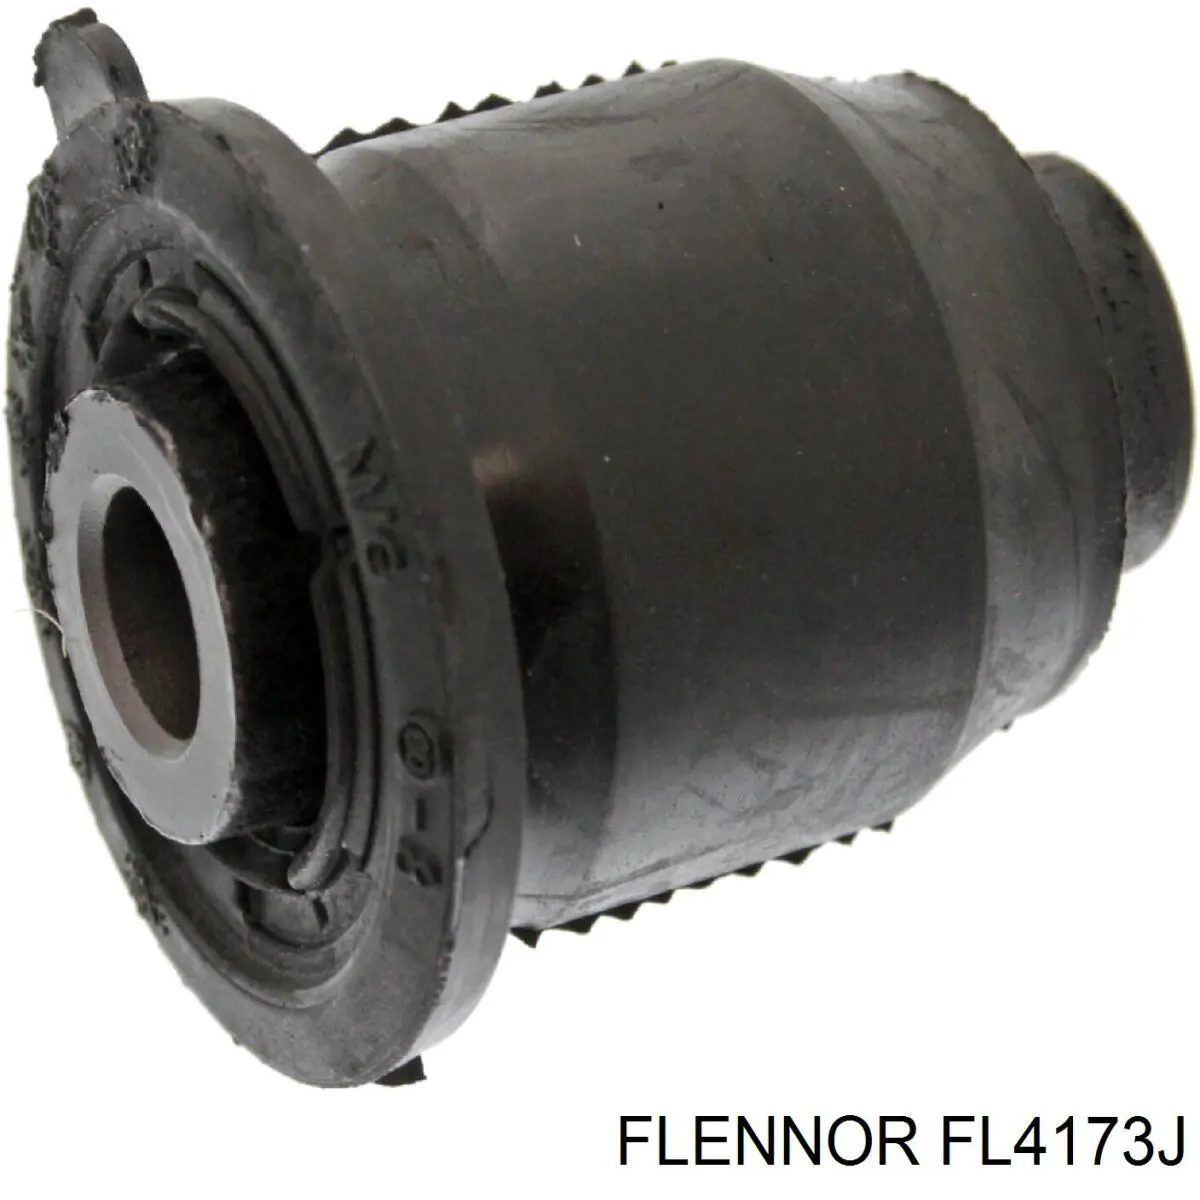 FL4173J Flennor silentblock de suspensión delantero inferior